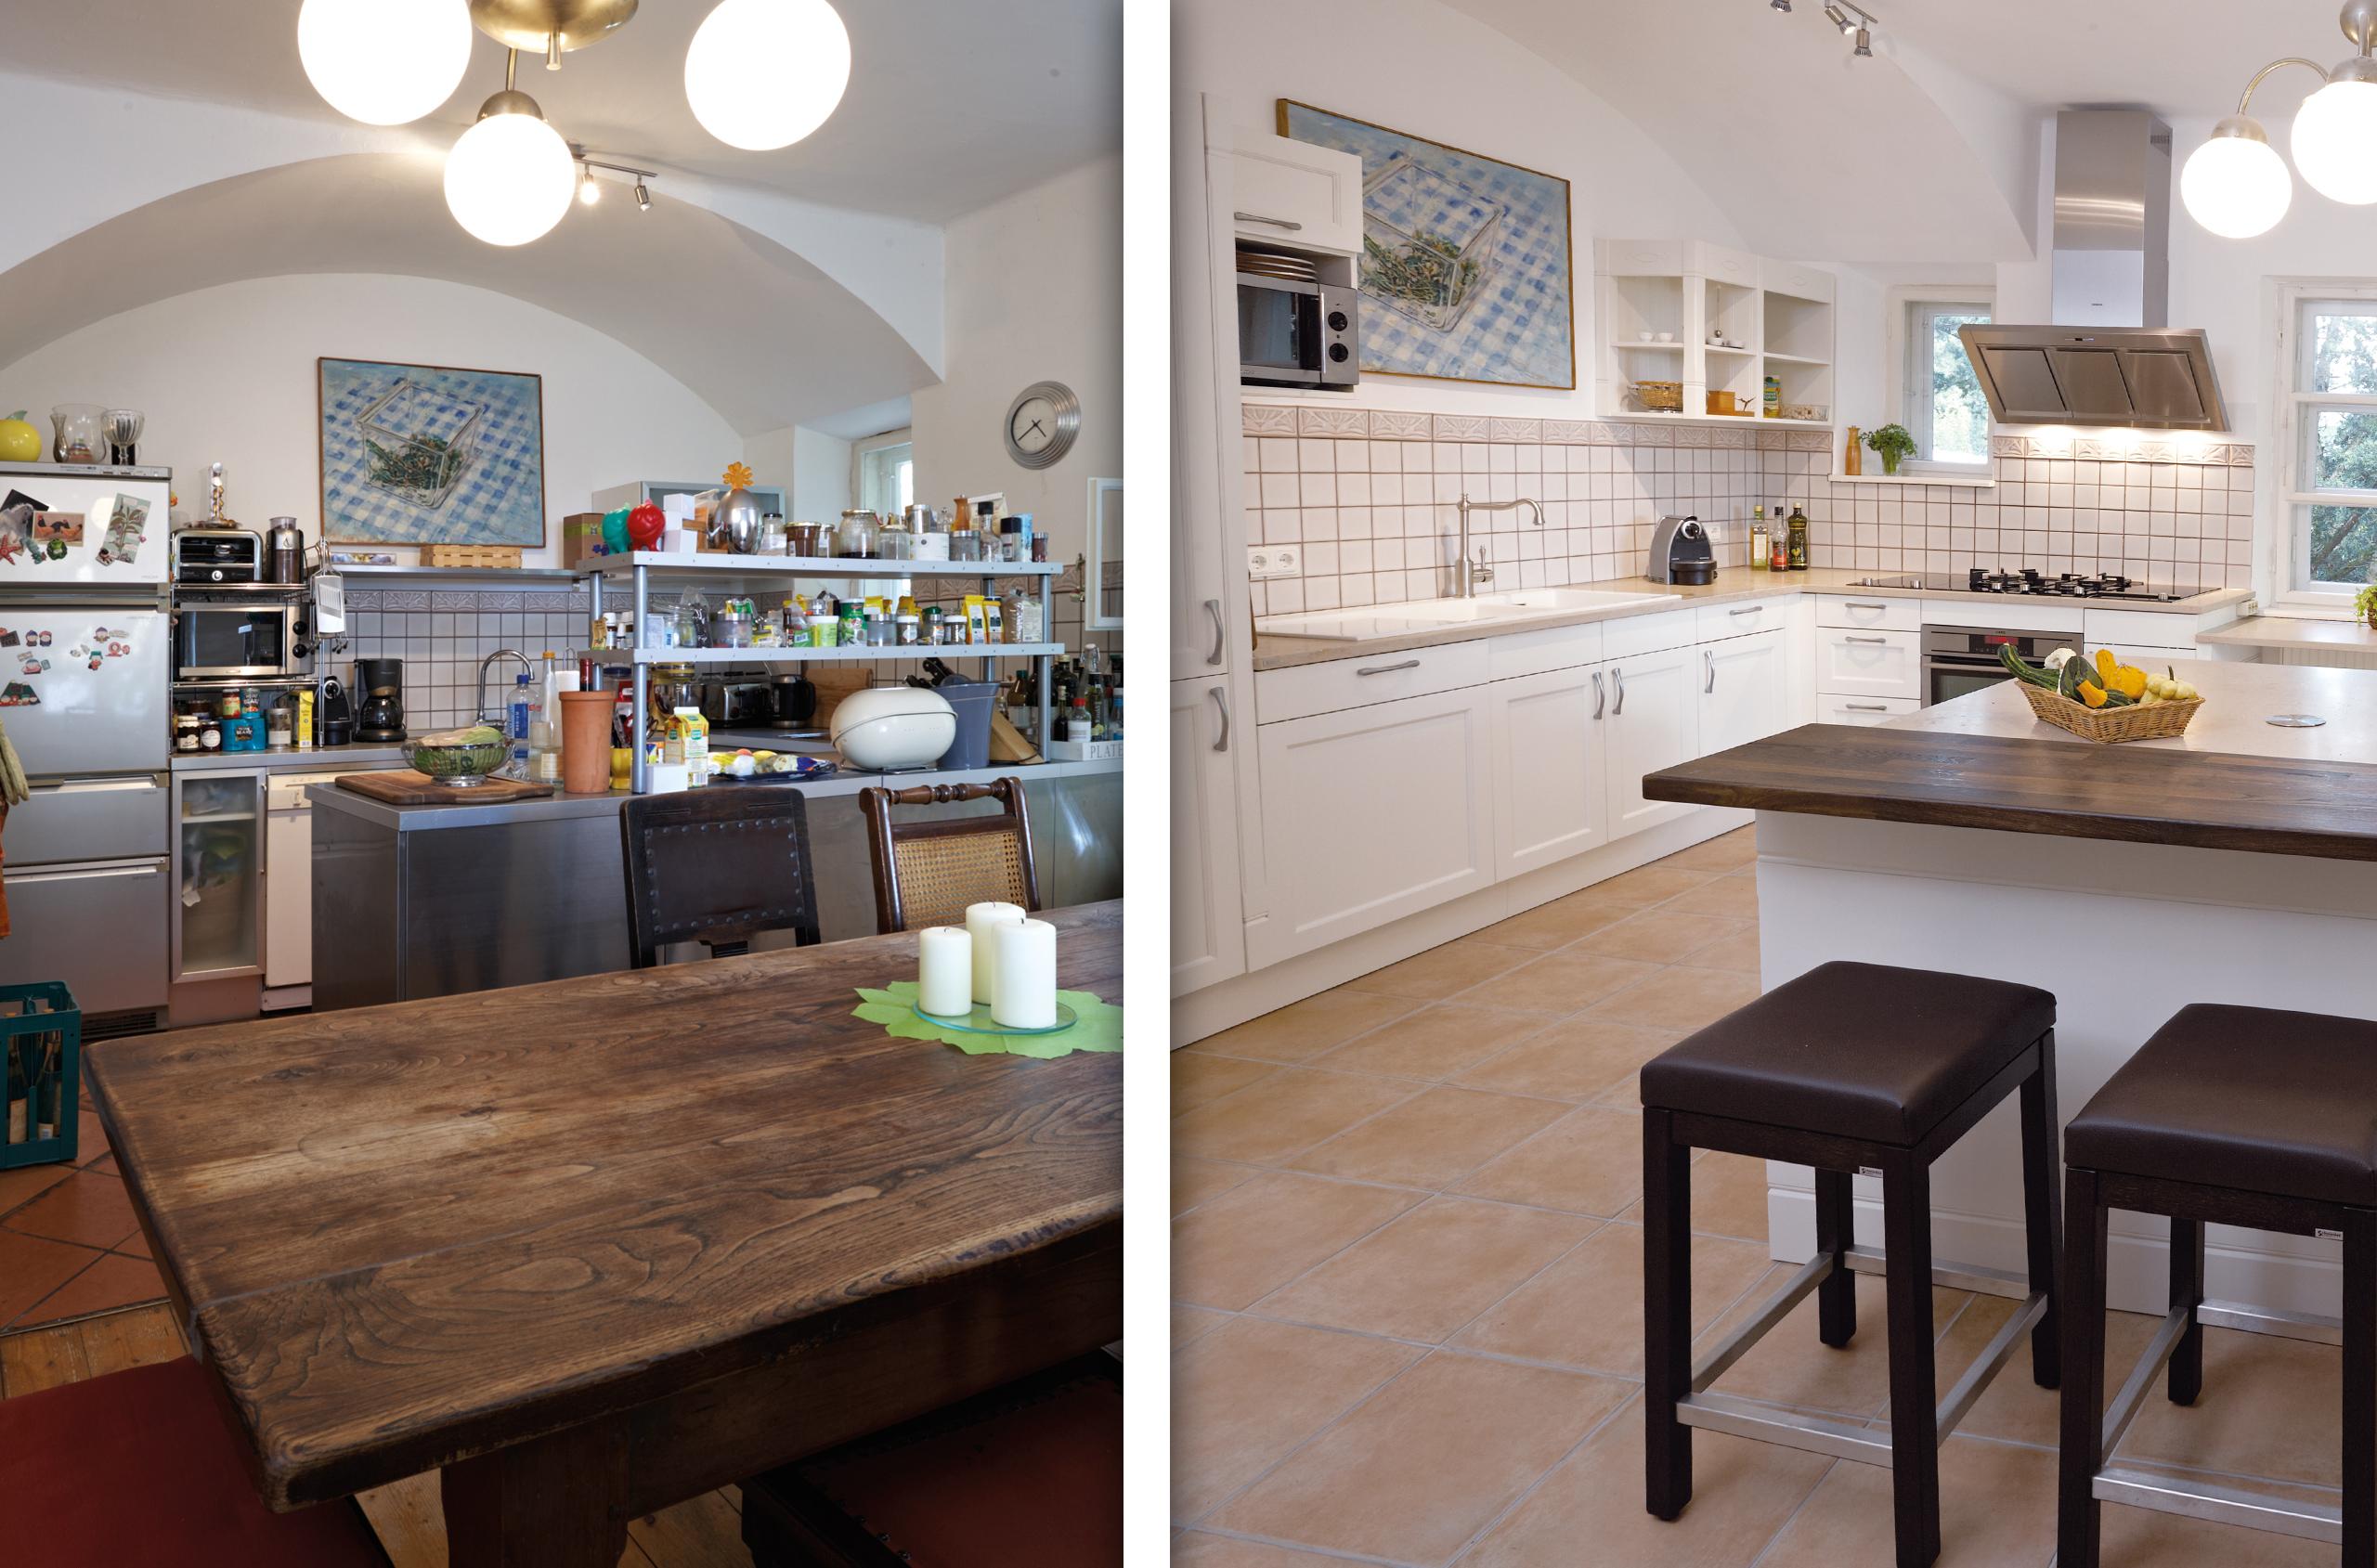 Vorher/Nacher Bild der Küche #küche #altbau #rustikal ©Küchen Quelle GmbH